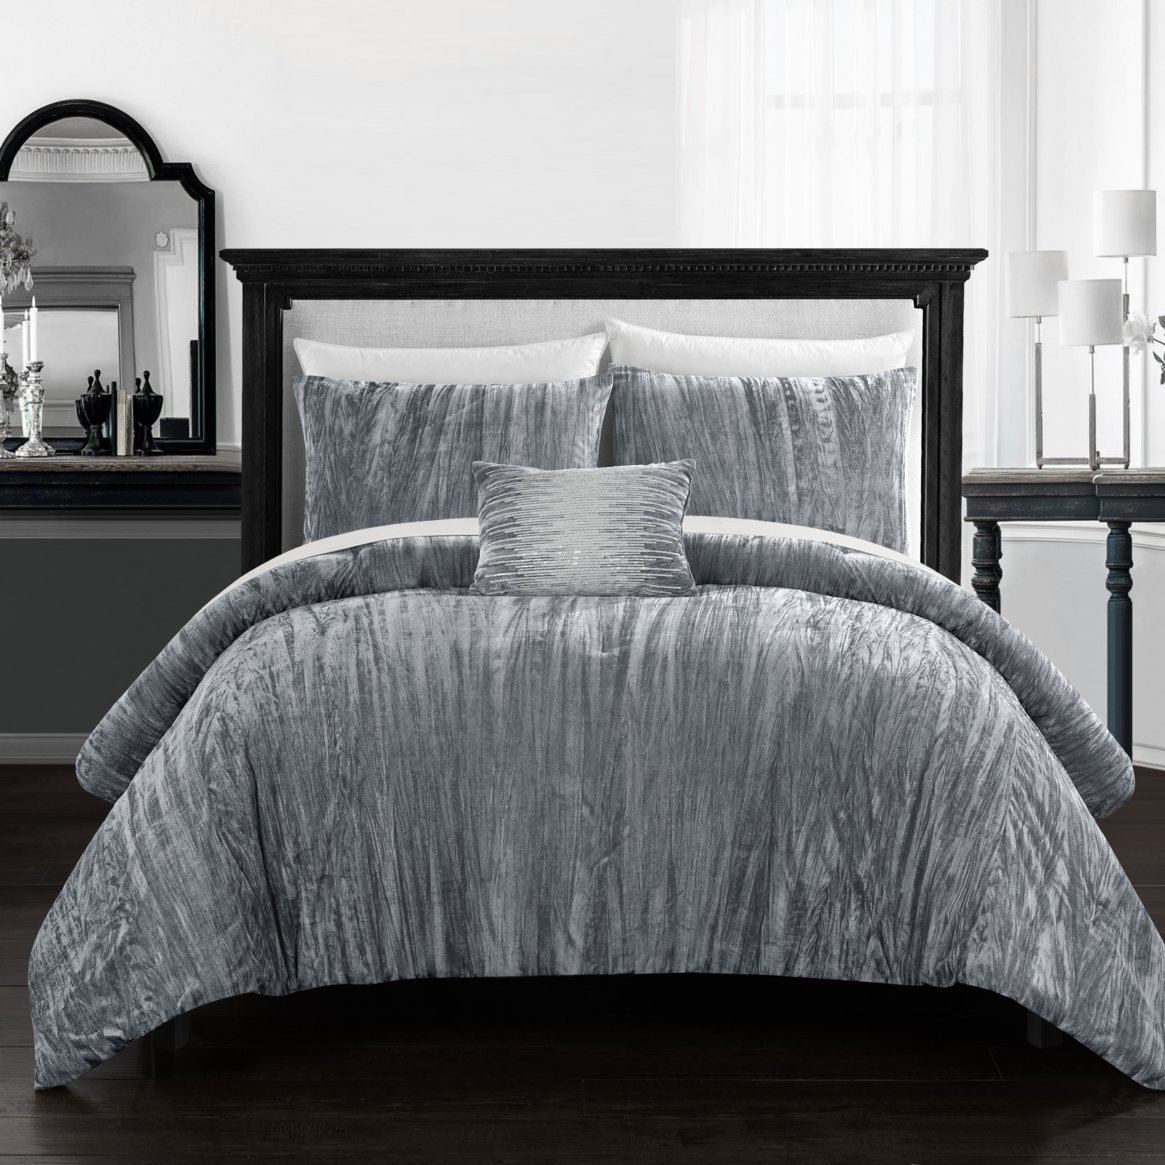 Merieta 8 Piece Comforter Set Crinkle Crushed Velvet Bed In A Bag Bedding - Grey, Queen